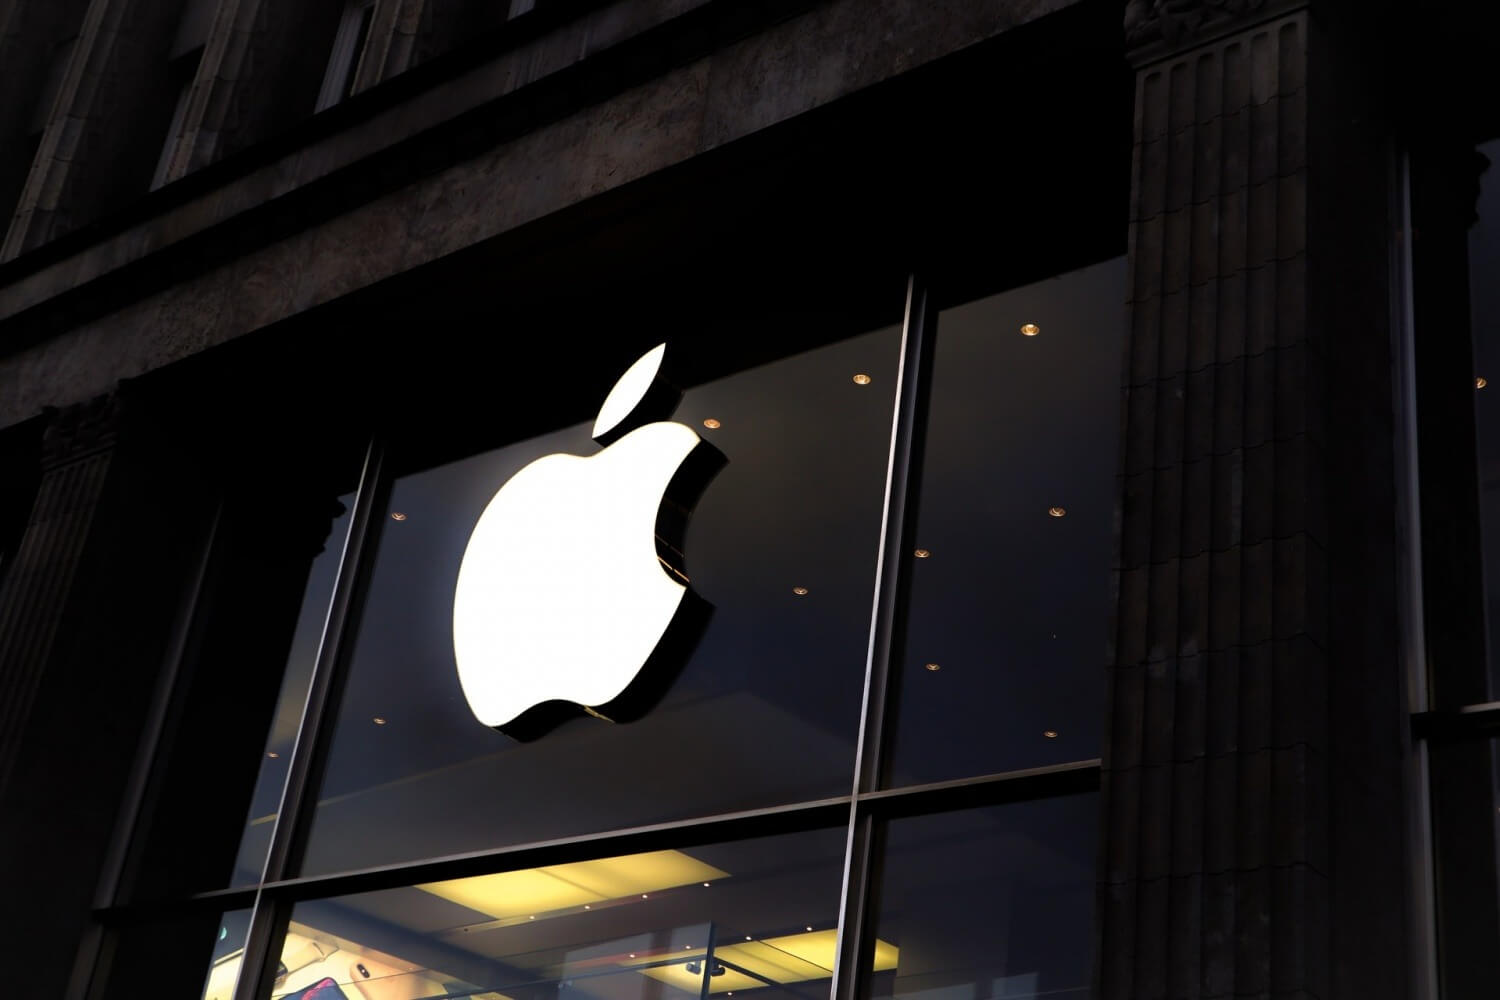 هشدار قانون گذاران آمریکا به اپل